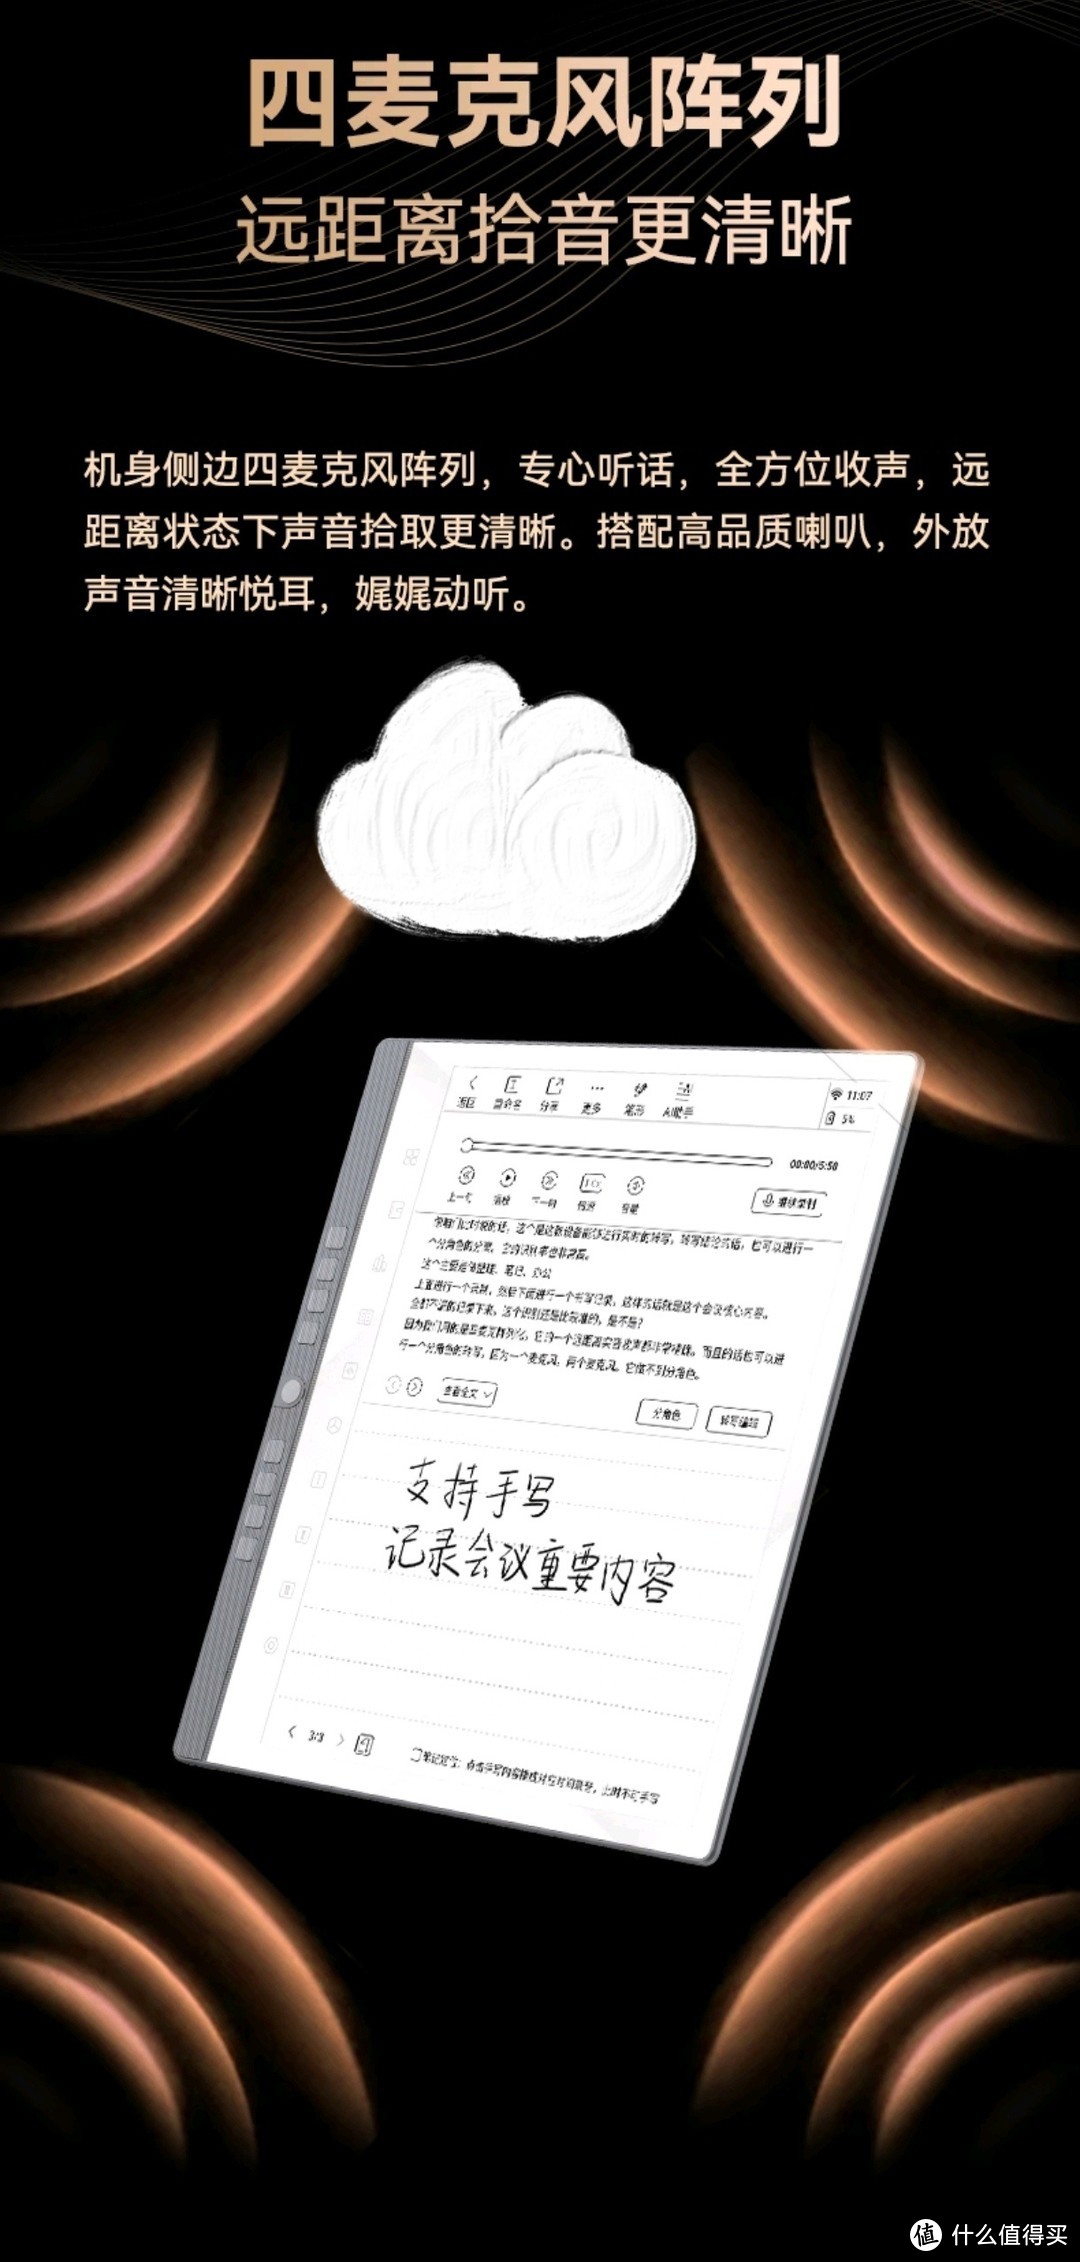 汉王的电子书可以无纸化读书吗？